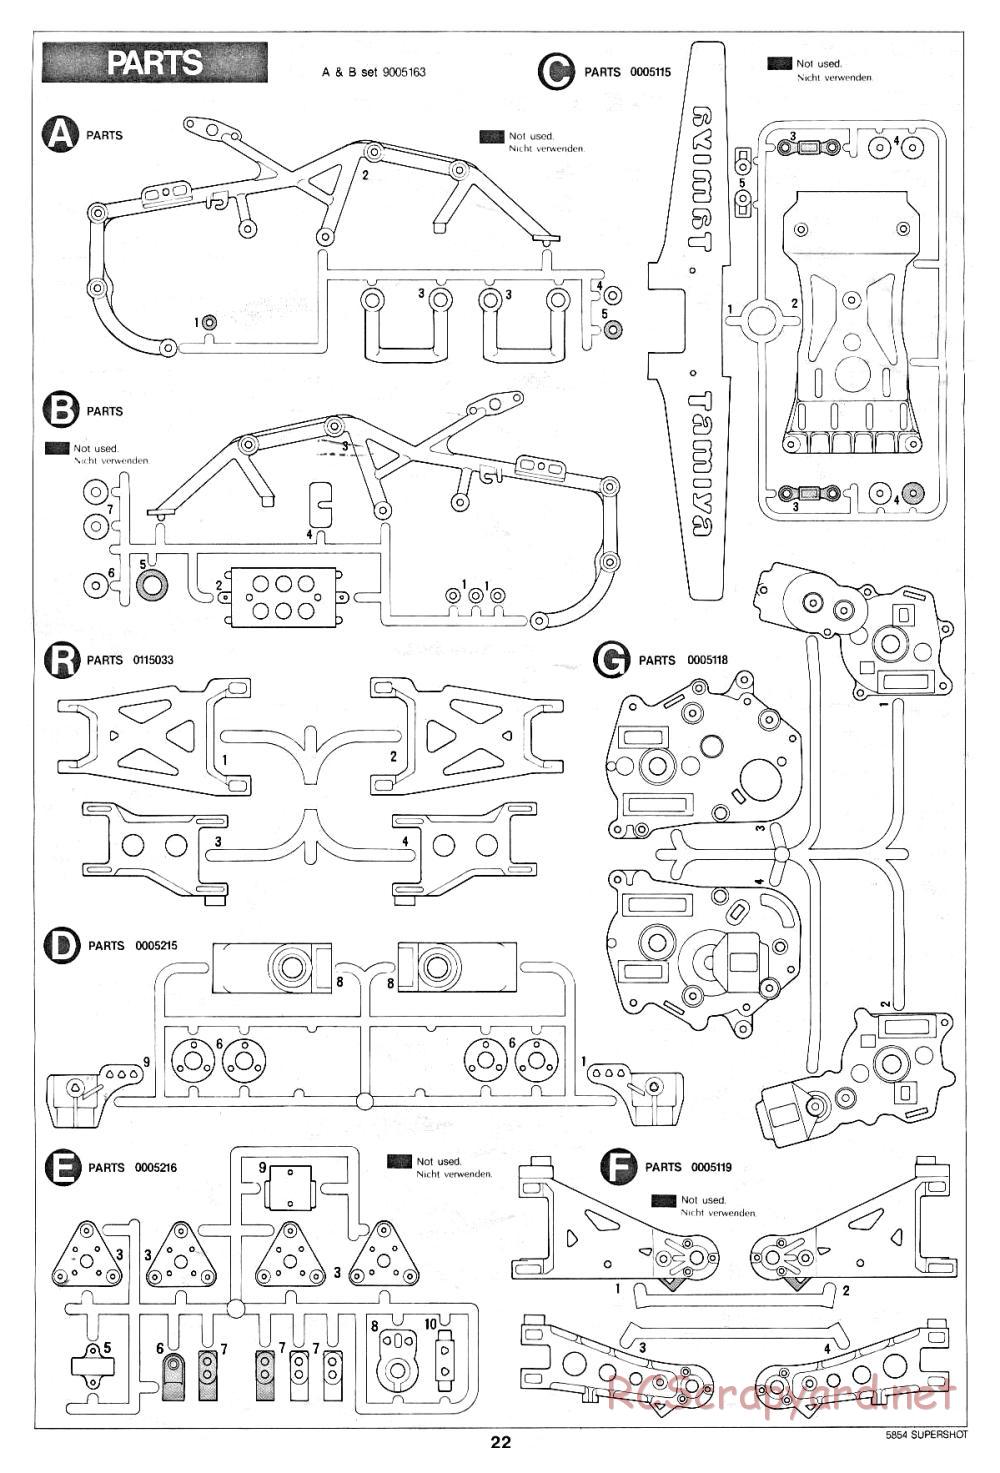 Tamiya - Supershot - 58054 - Manual - Page 22